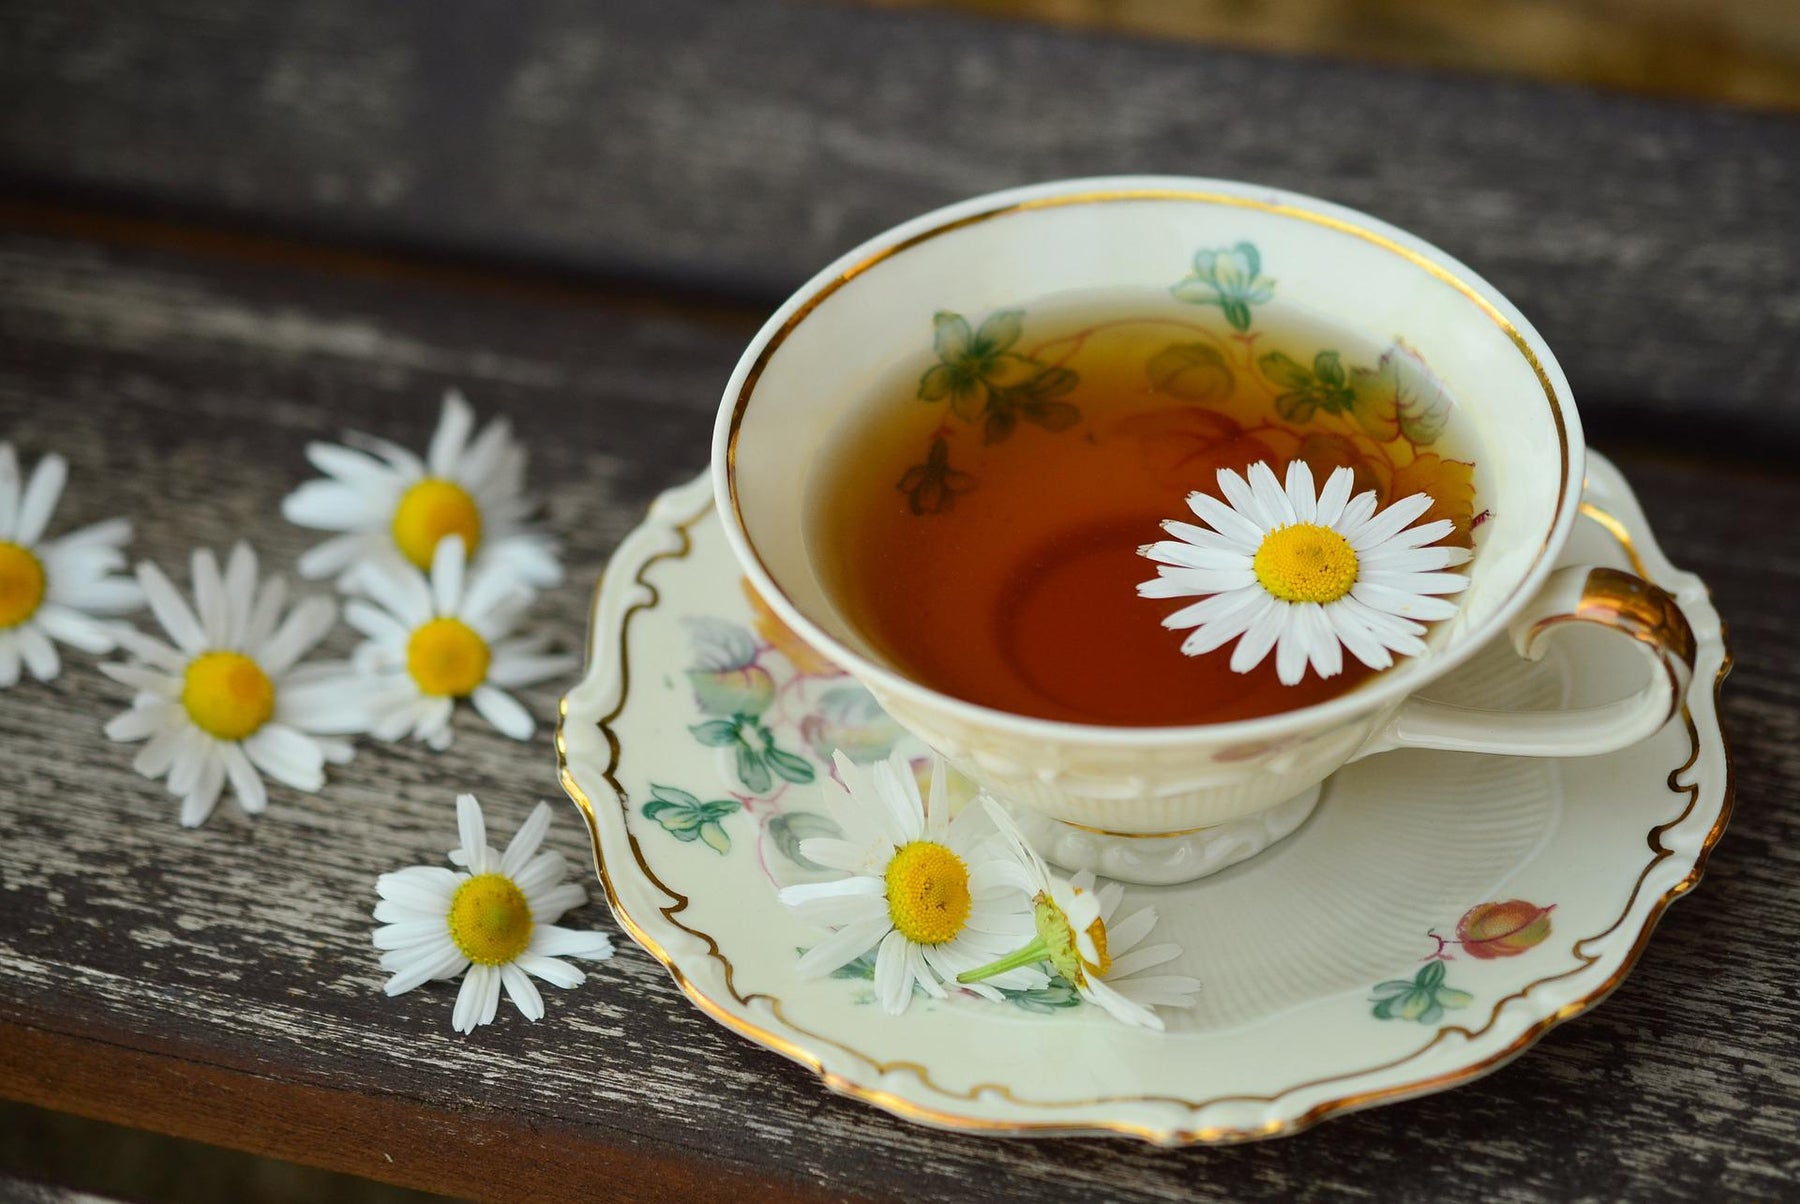 Benefits of Drinking Kidney Bladder Tea